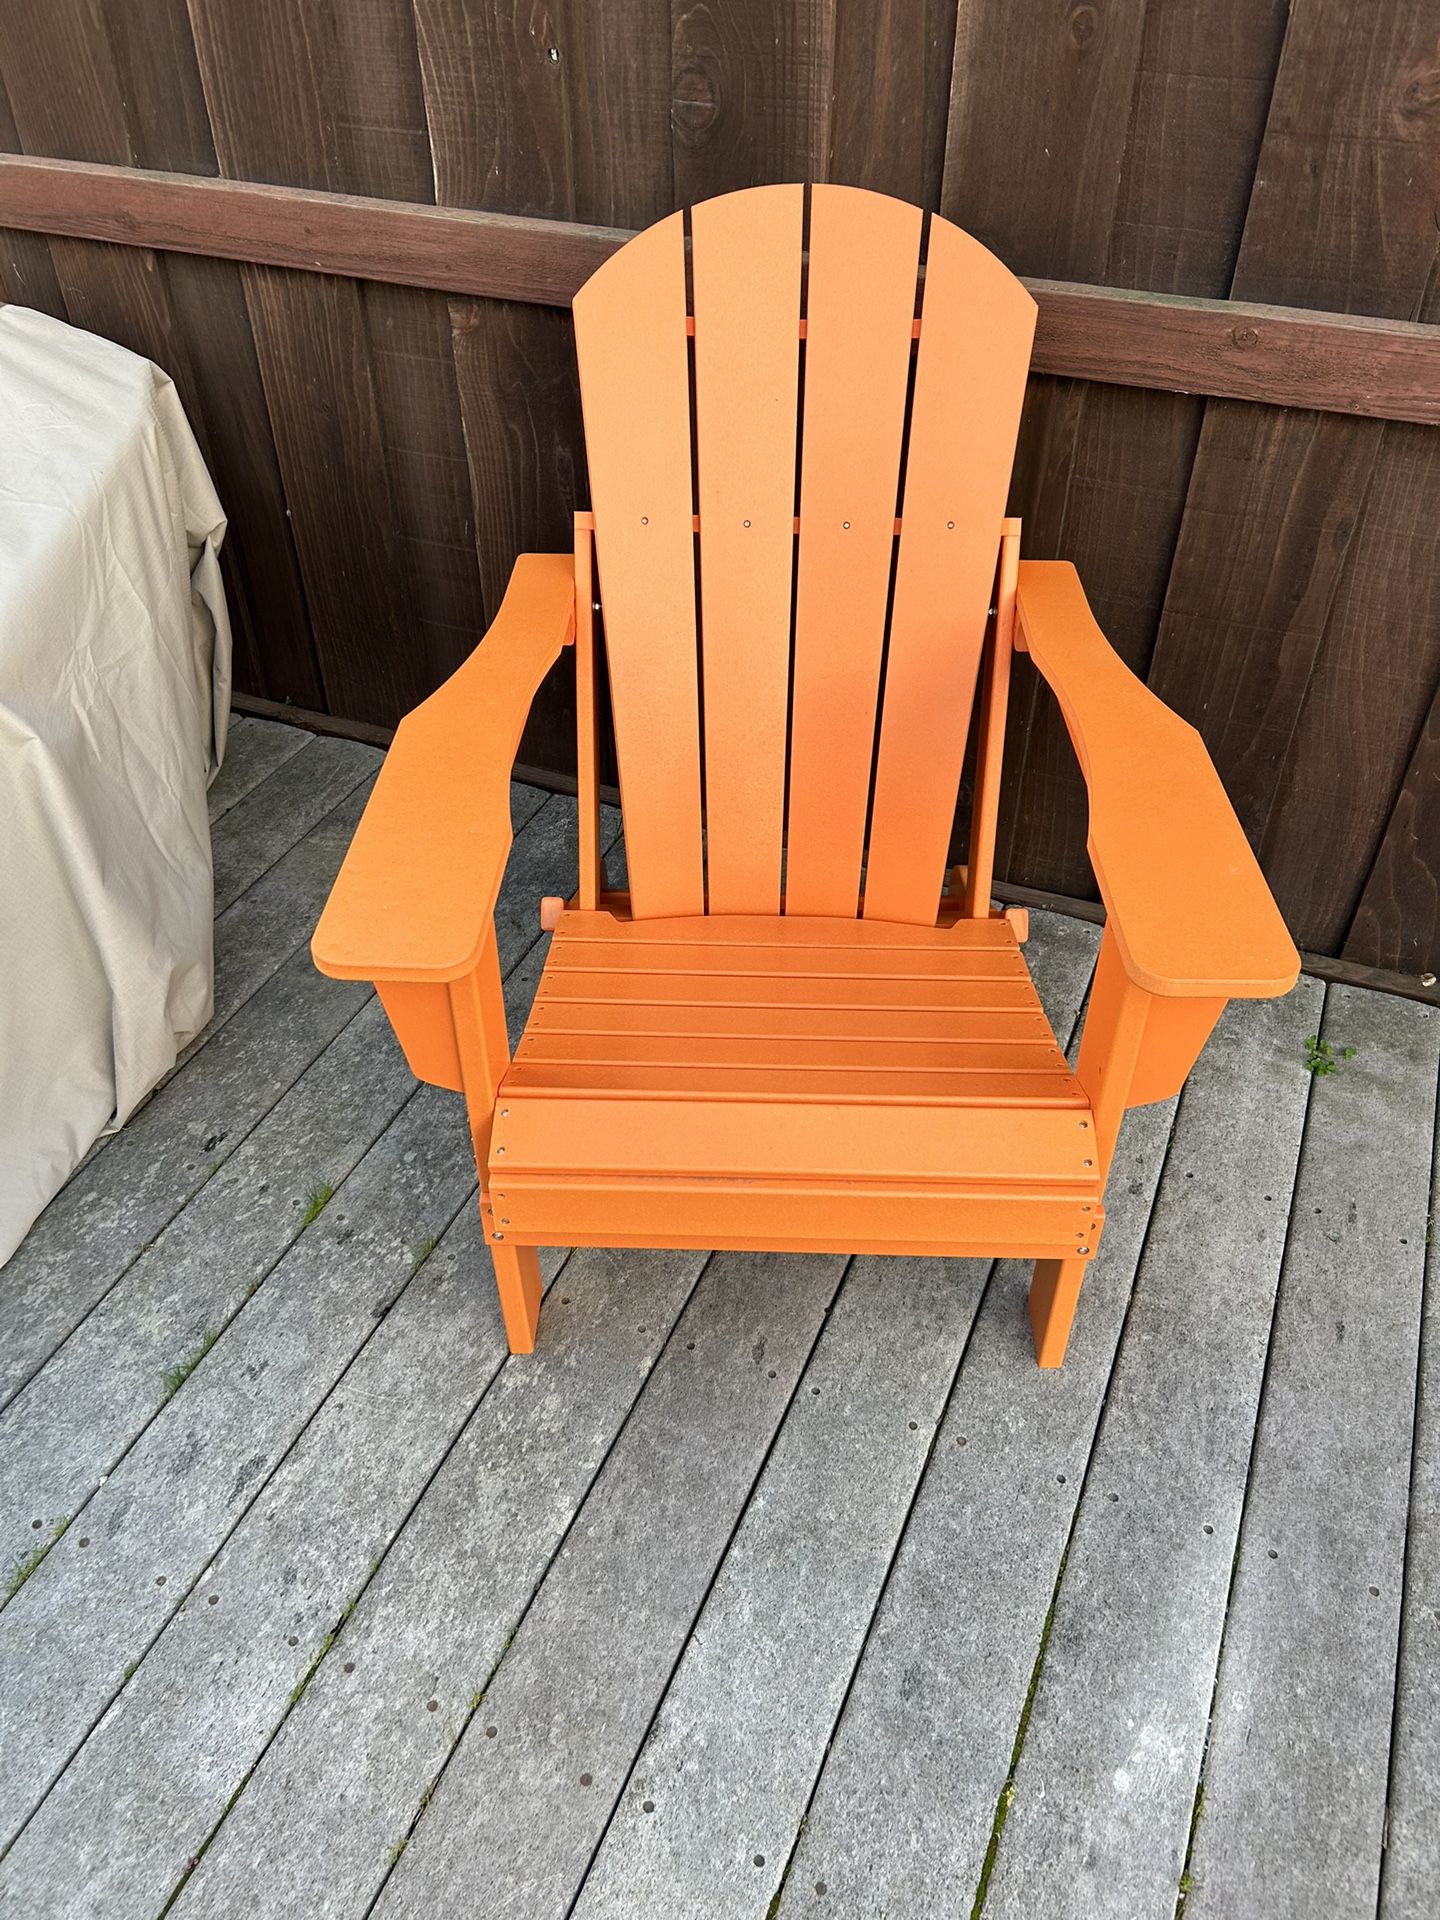 Never Used! Orange Polywood Adirondack Chairs 